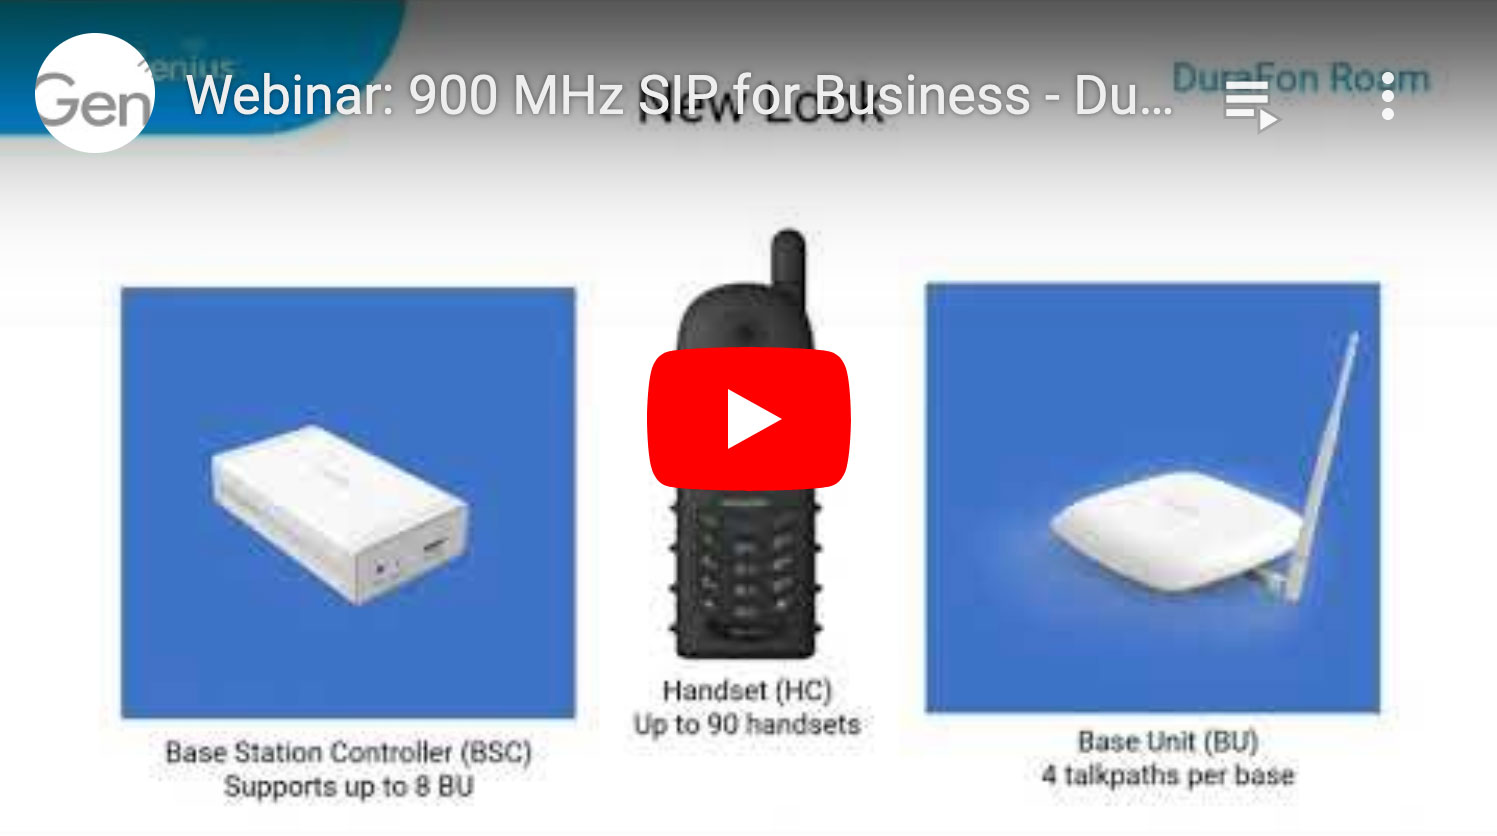 900 MHz SIP for Business - DuraFon Roam